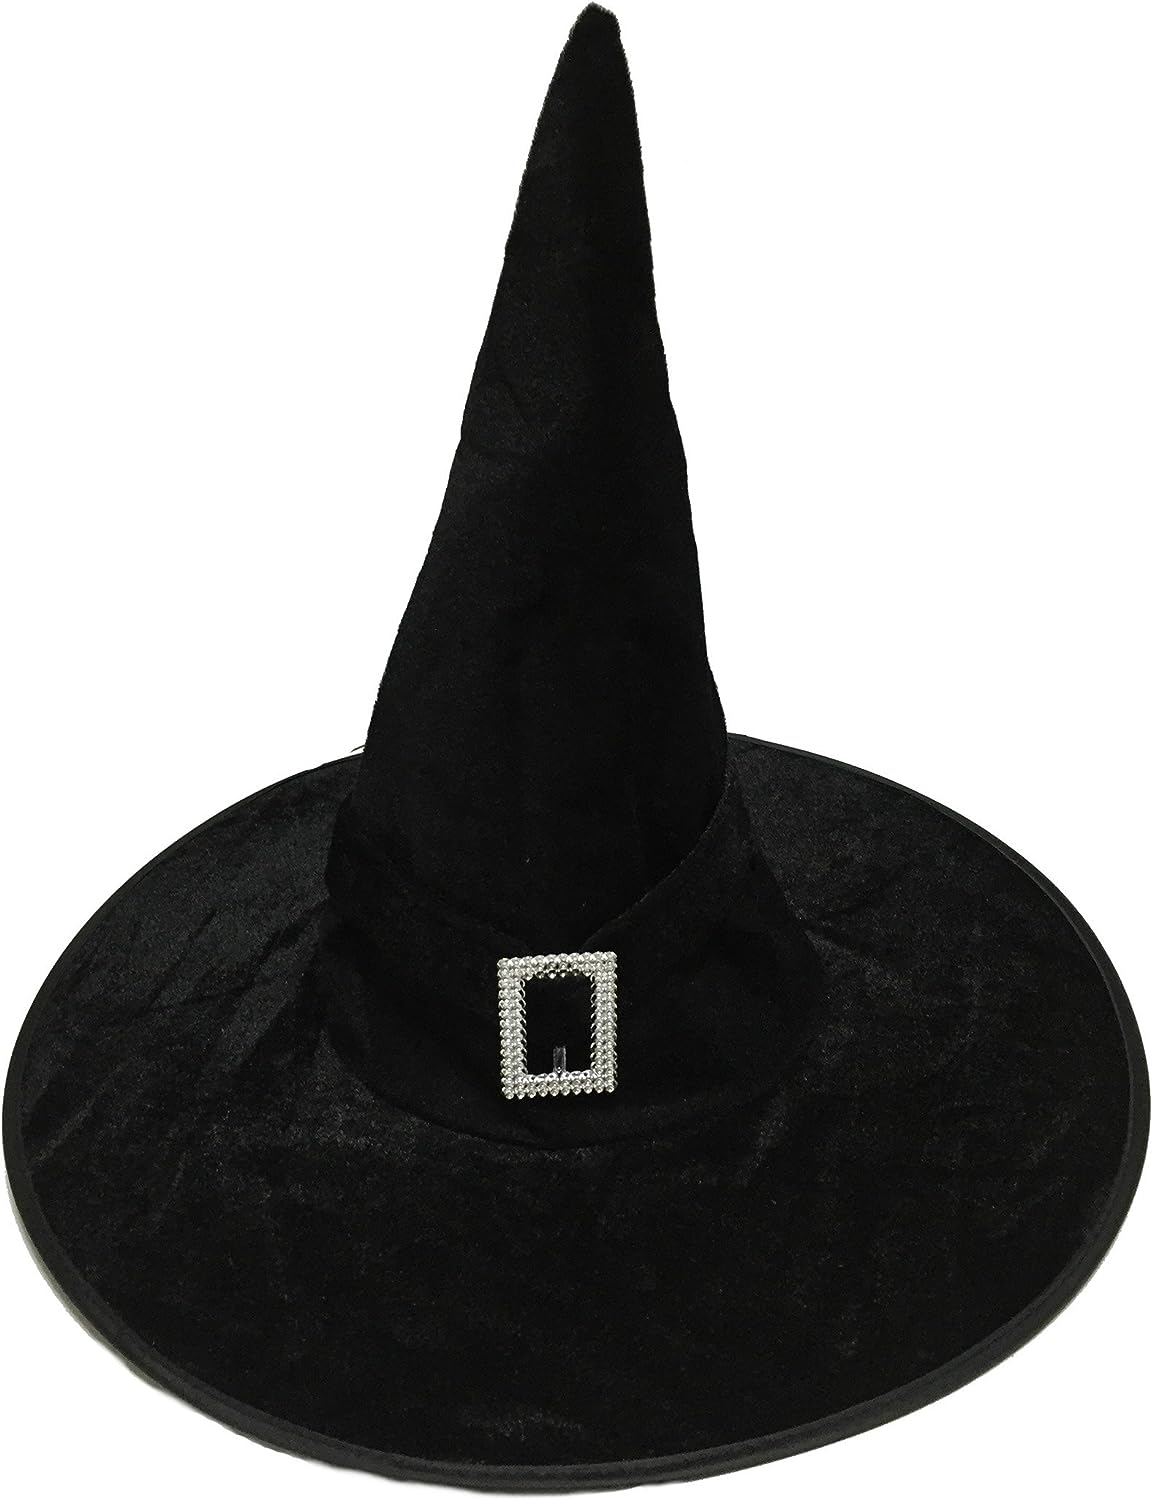 ハロウィン コスプレ 魔女 帽子 ベロア調 魔女の帽子 ウィッチハット 仮装 パーティー グッズ Madrugada S112